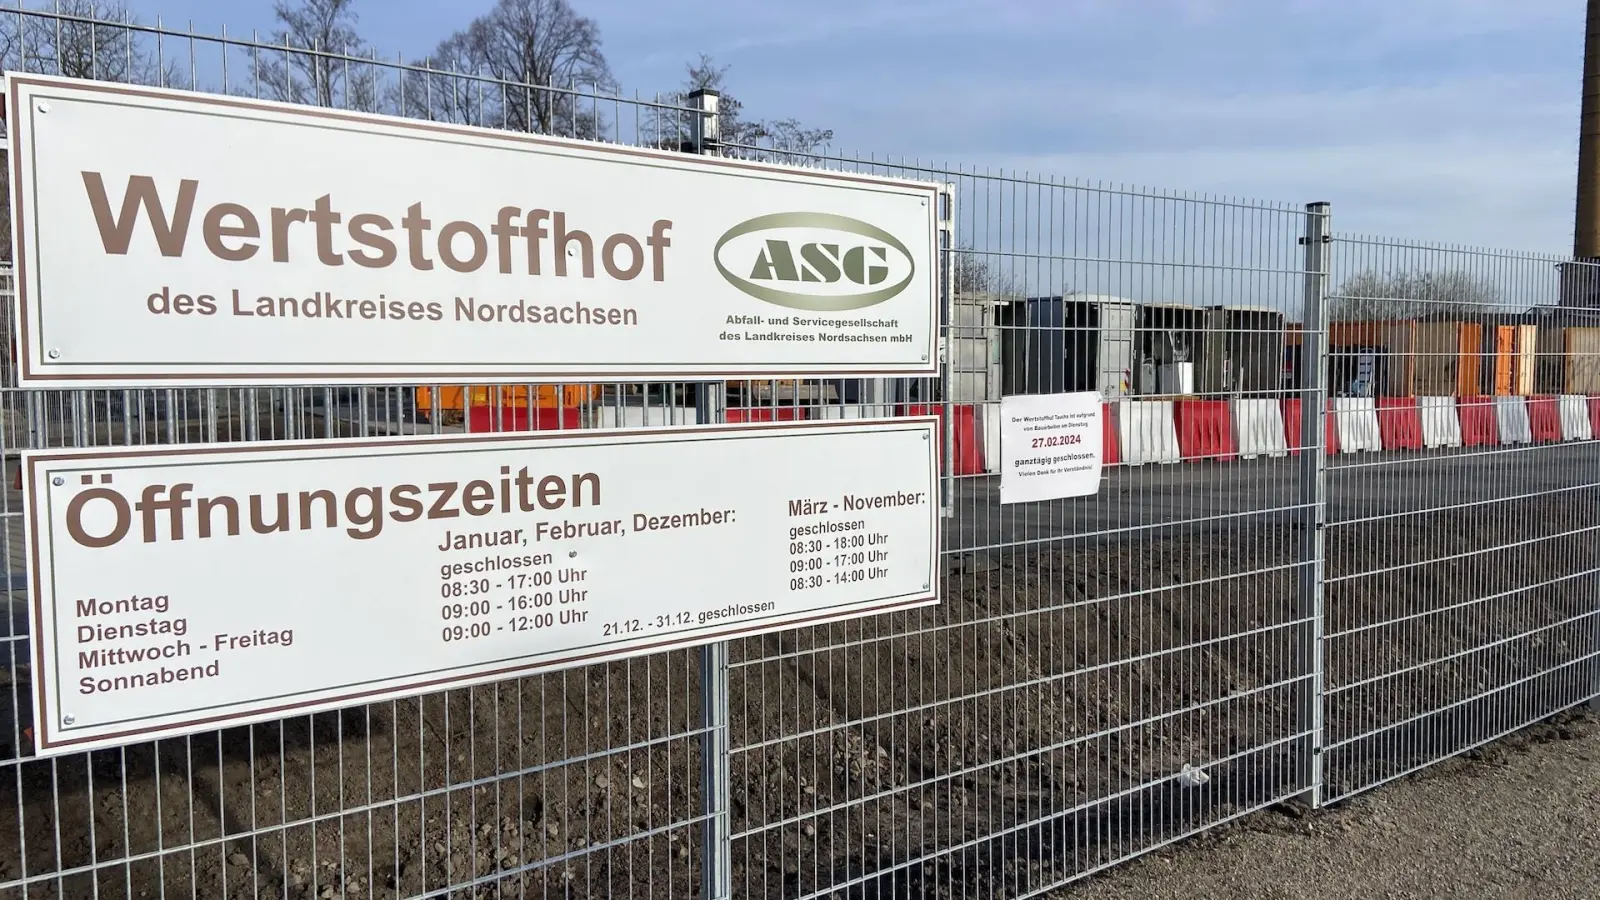 Der ASG-Wertstoffhof in der Jubischstraße. Seit 9. Januar können hier kostenlos Wertstoffe wie Grünschnitt, Elektroschrott oder Sperrmüll abgegeben werden. (Foto: taucha-kompakt.de)